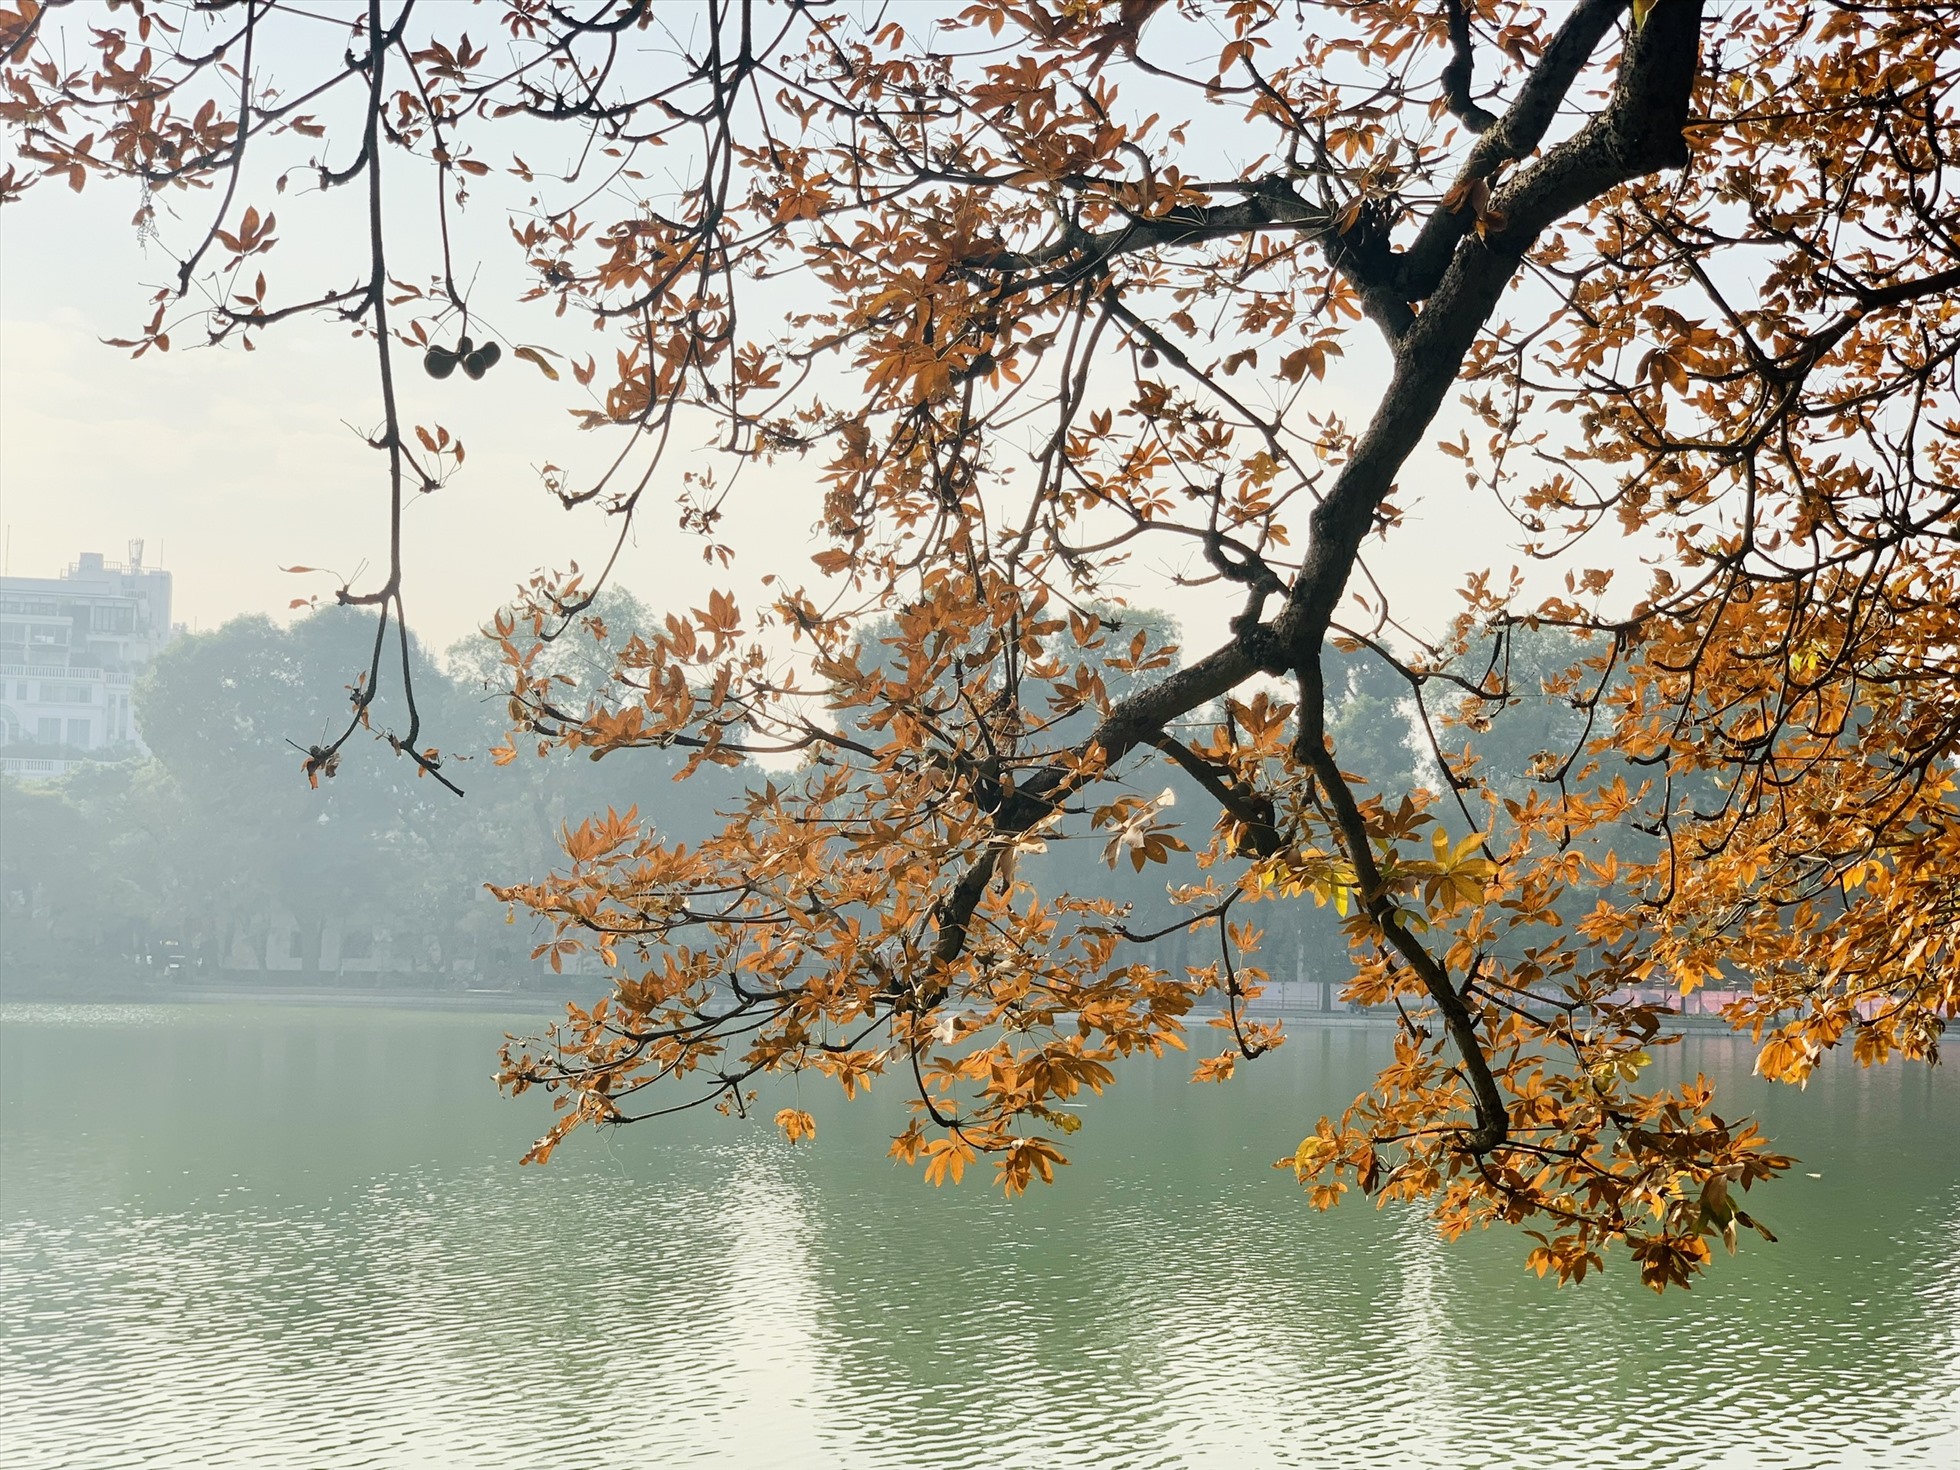 Giữa chốn đô thị nhộn nhịp, cây mõ lá vàng đỏ đầy thơ mộng đứng ngả bóng bên hồ, tạo cảm giác đầy bình yên, thơ mộng.